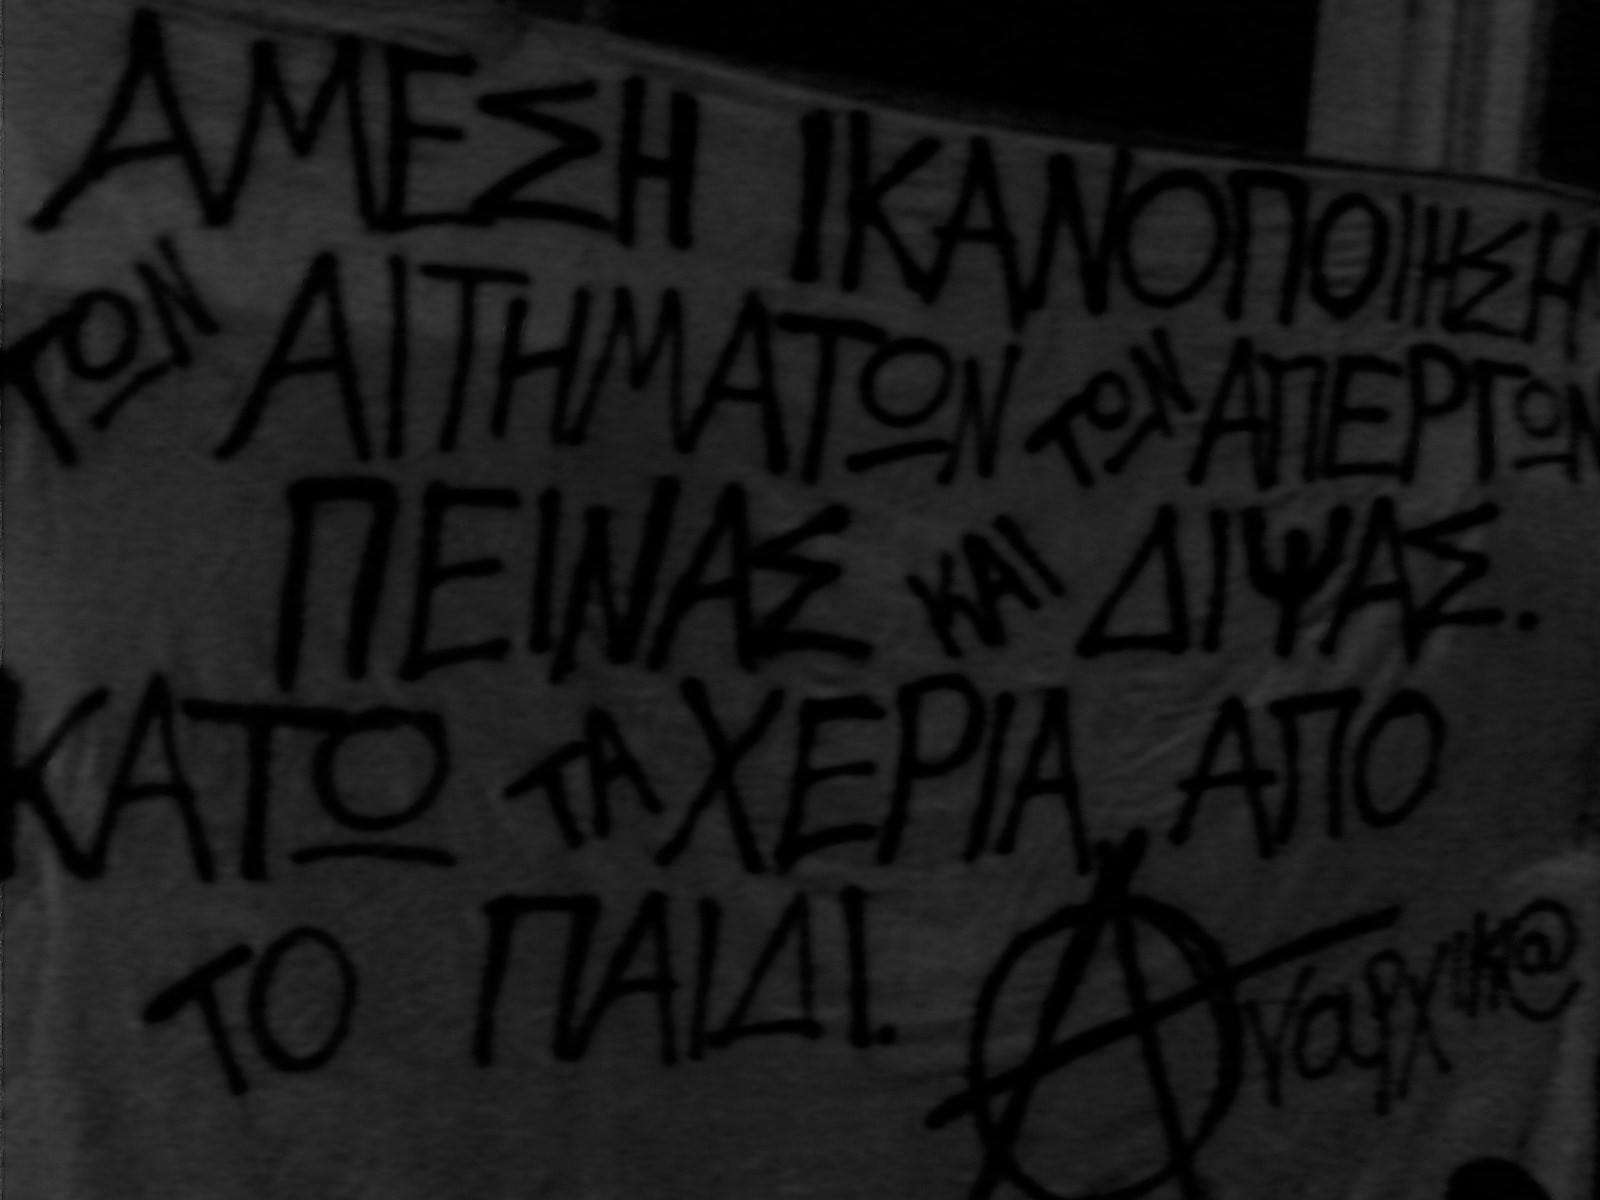 Αθήνα: Μάχη για την αναρχία συνεπάγεται πόλεμο μέχρι τέλους